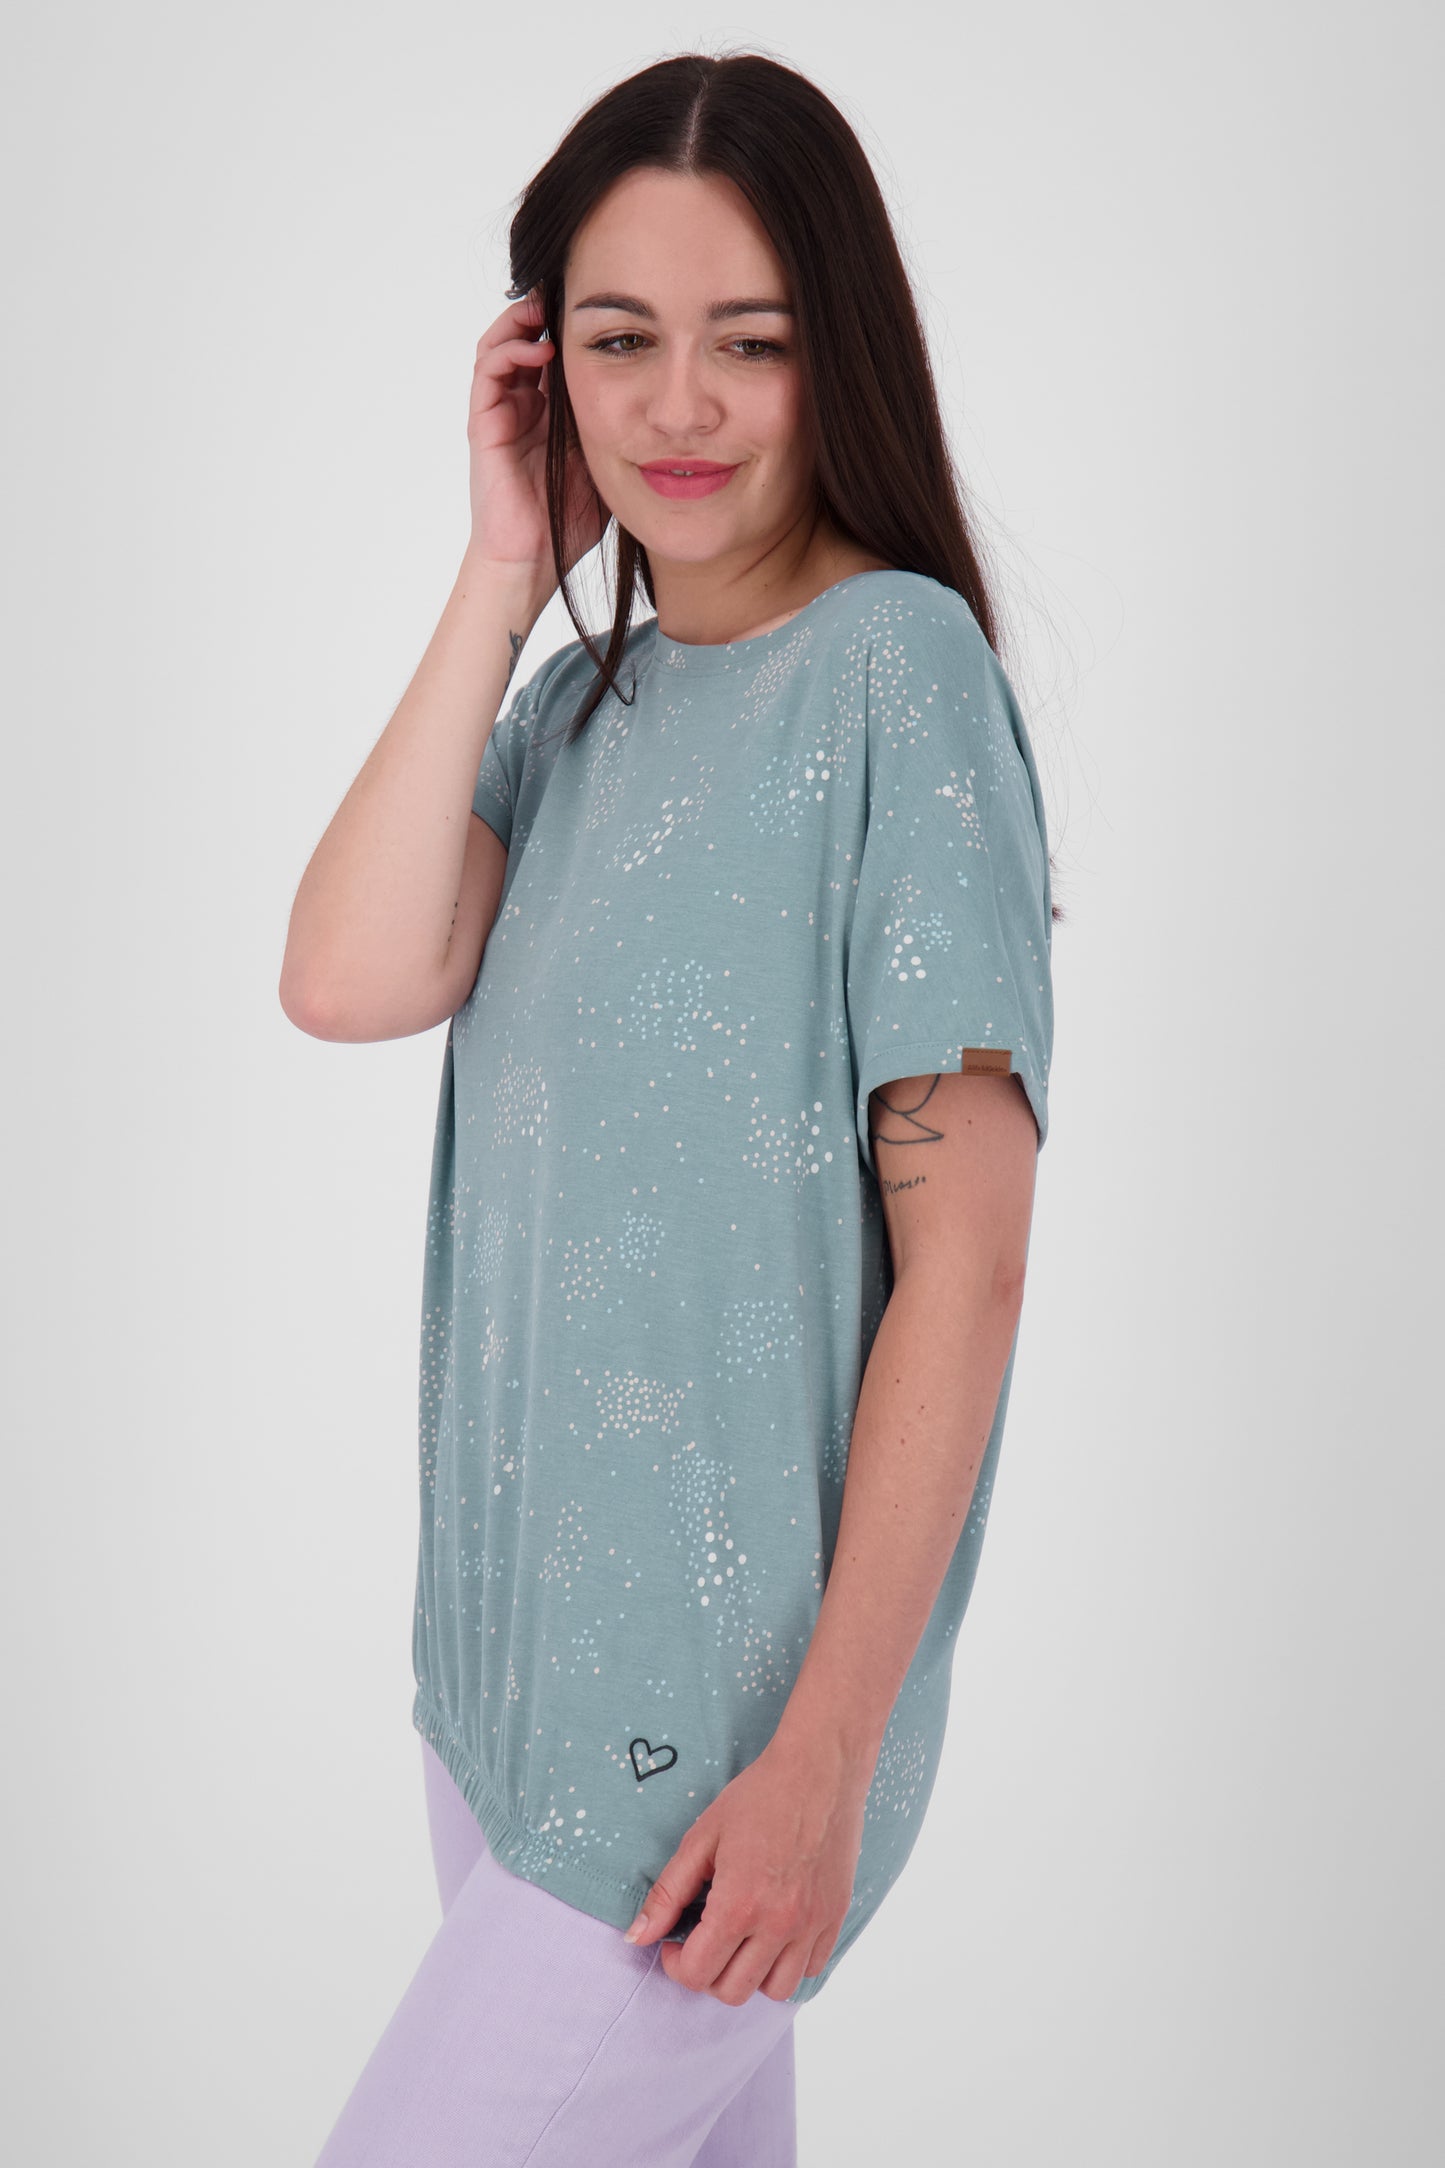 Vielseitiges Damenshirt: Oversize-Shirt SunAK B Grau